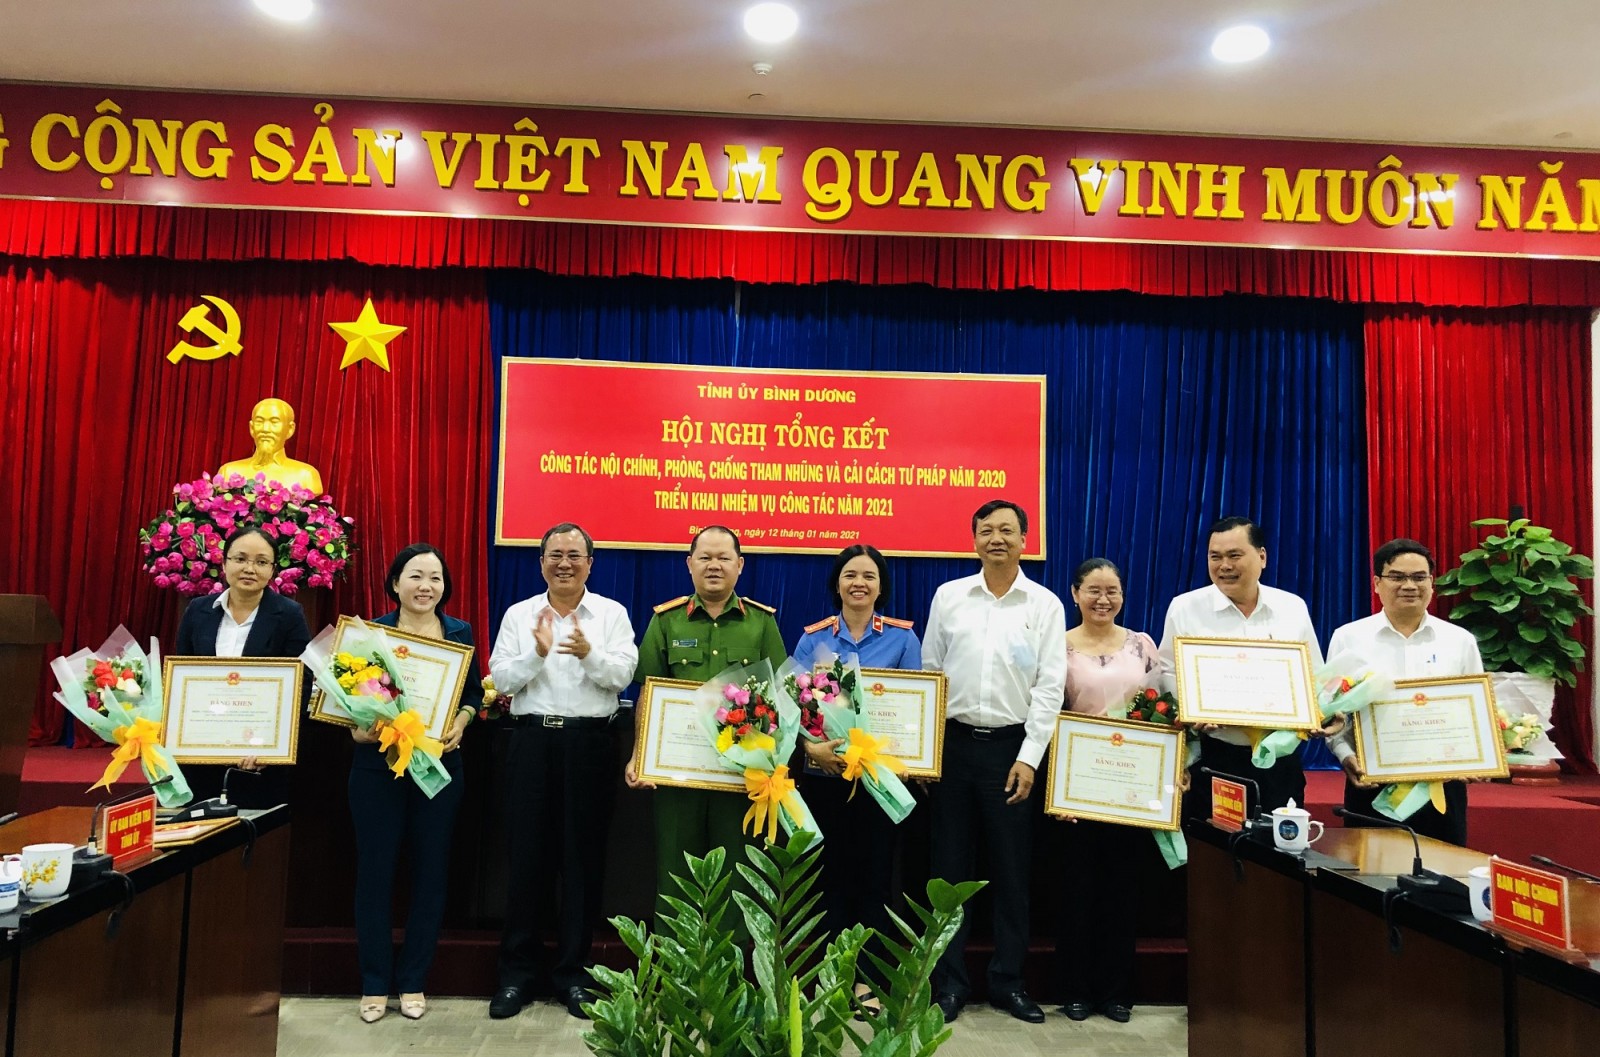 Đồng chí Trần Văn Nam, Ủy viên Trung ương Đảng, Bí thư Tỉnh ủy, Trưởng đoàn đại biểu Quốc hội tỉnh trao bằng khen cho các tập thể và cá nhân có thành tích xuất sắc trong công tác phòng, chống tham nhũng giai đoạn 2013-2020